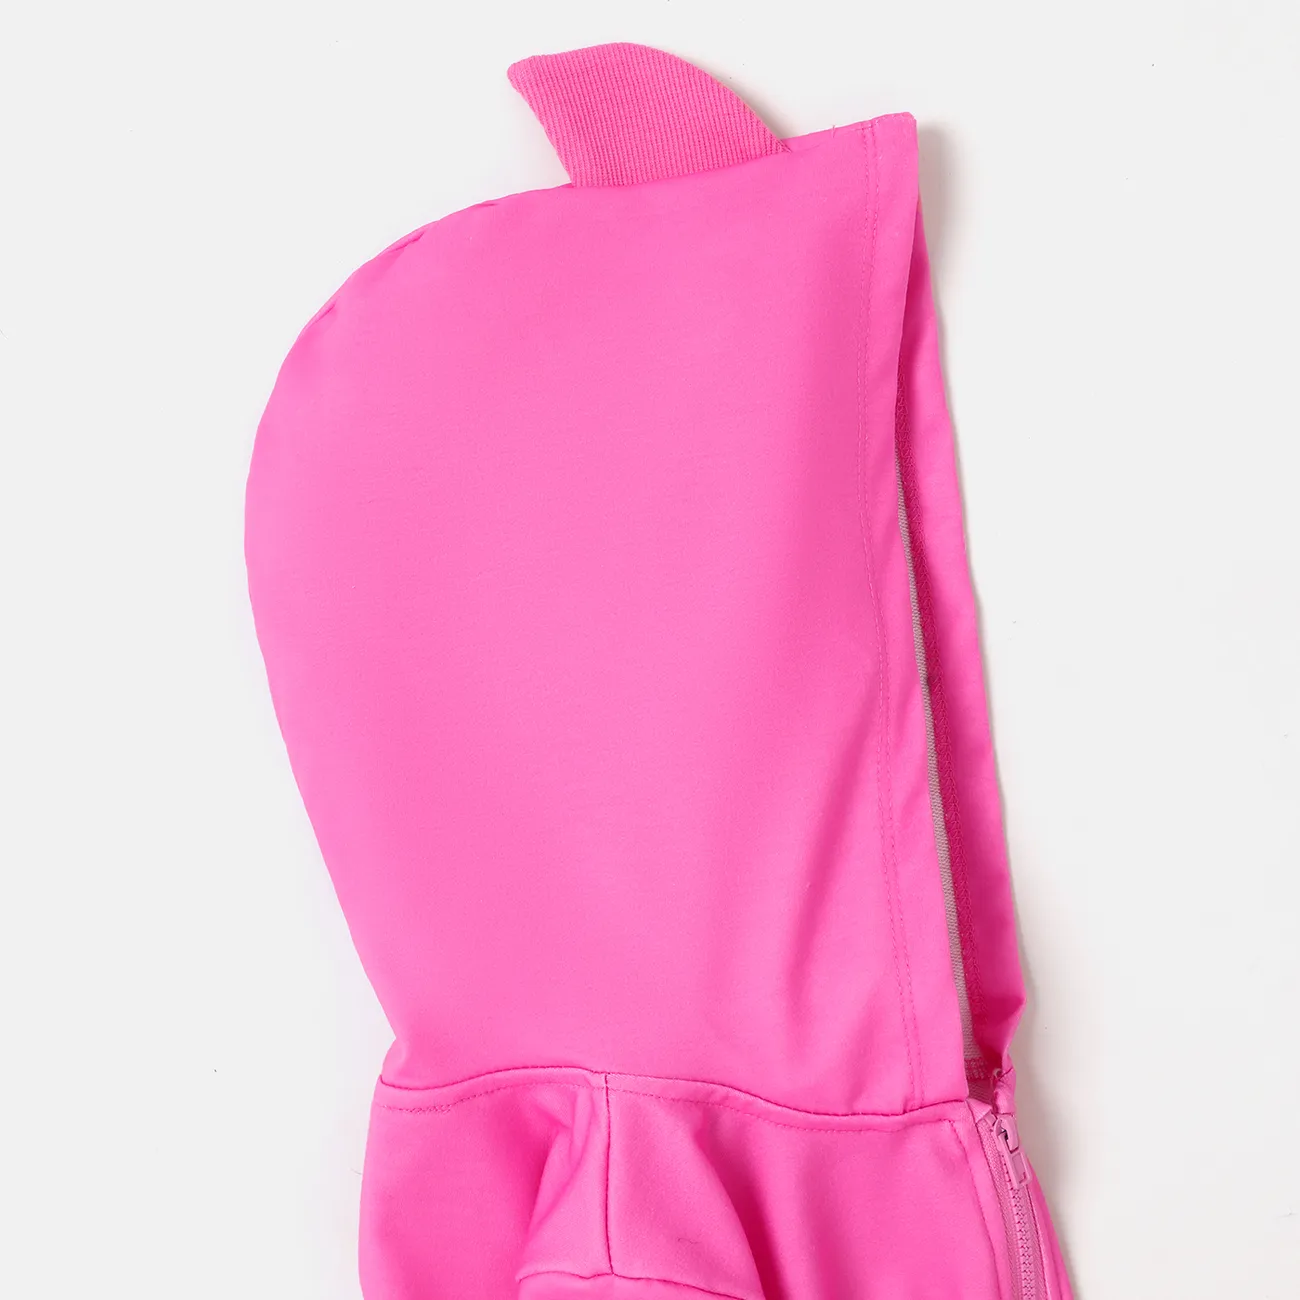 Baby Shark Toddler Girl/Boy Naia™ Character Print Long-sleeve Zip Up Hoodie  Pink big image 1